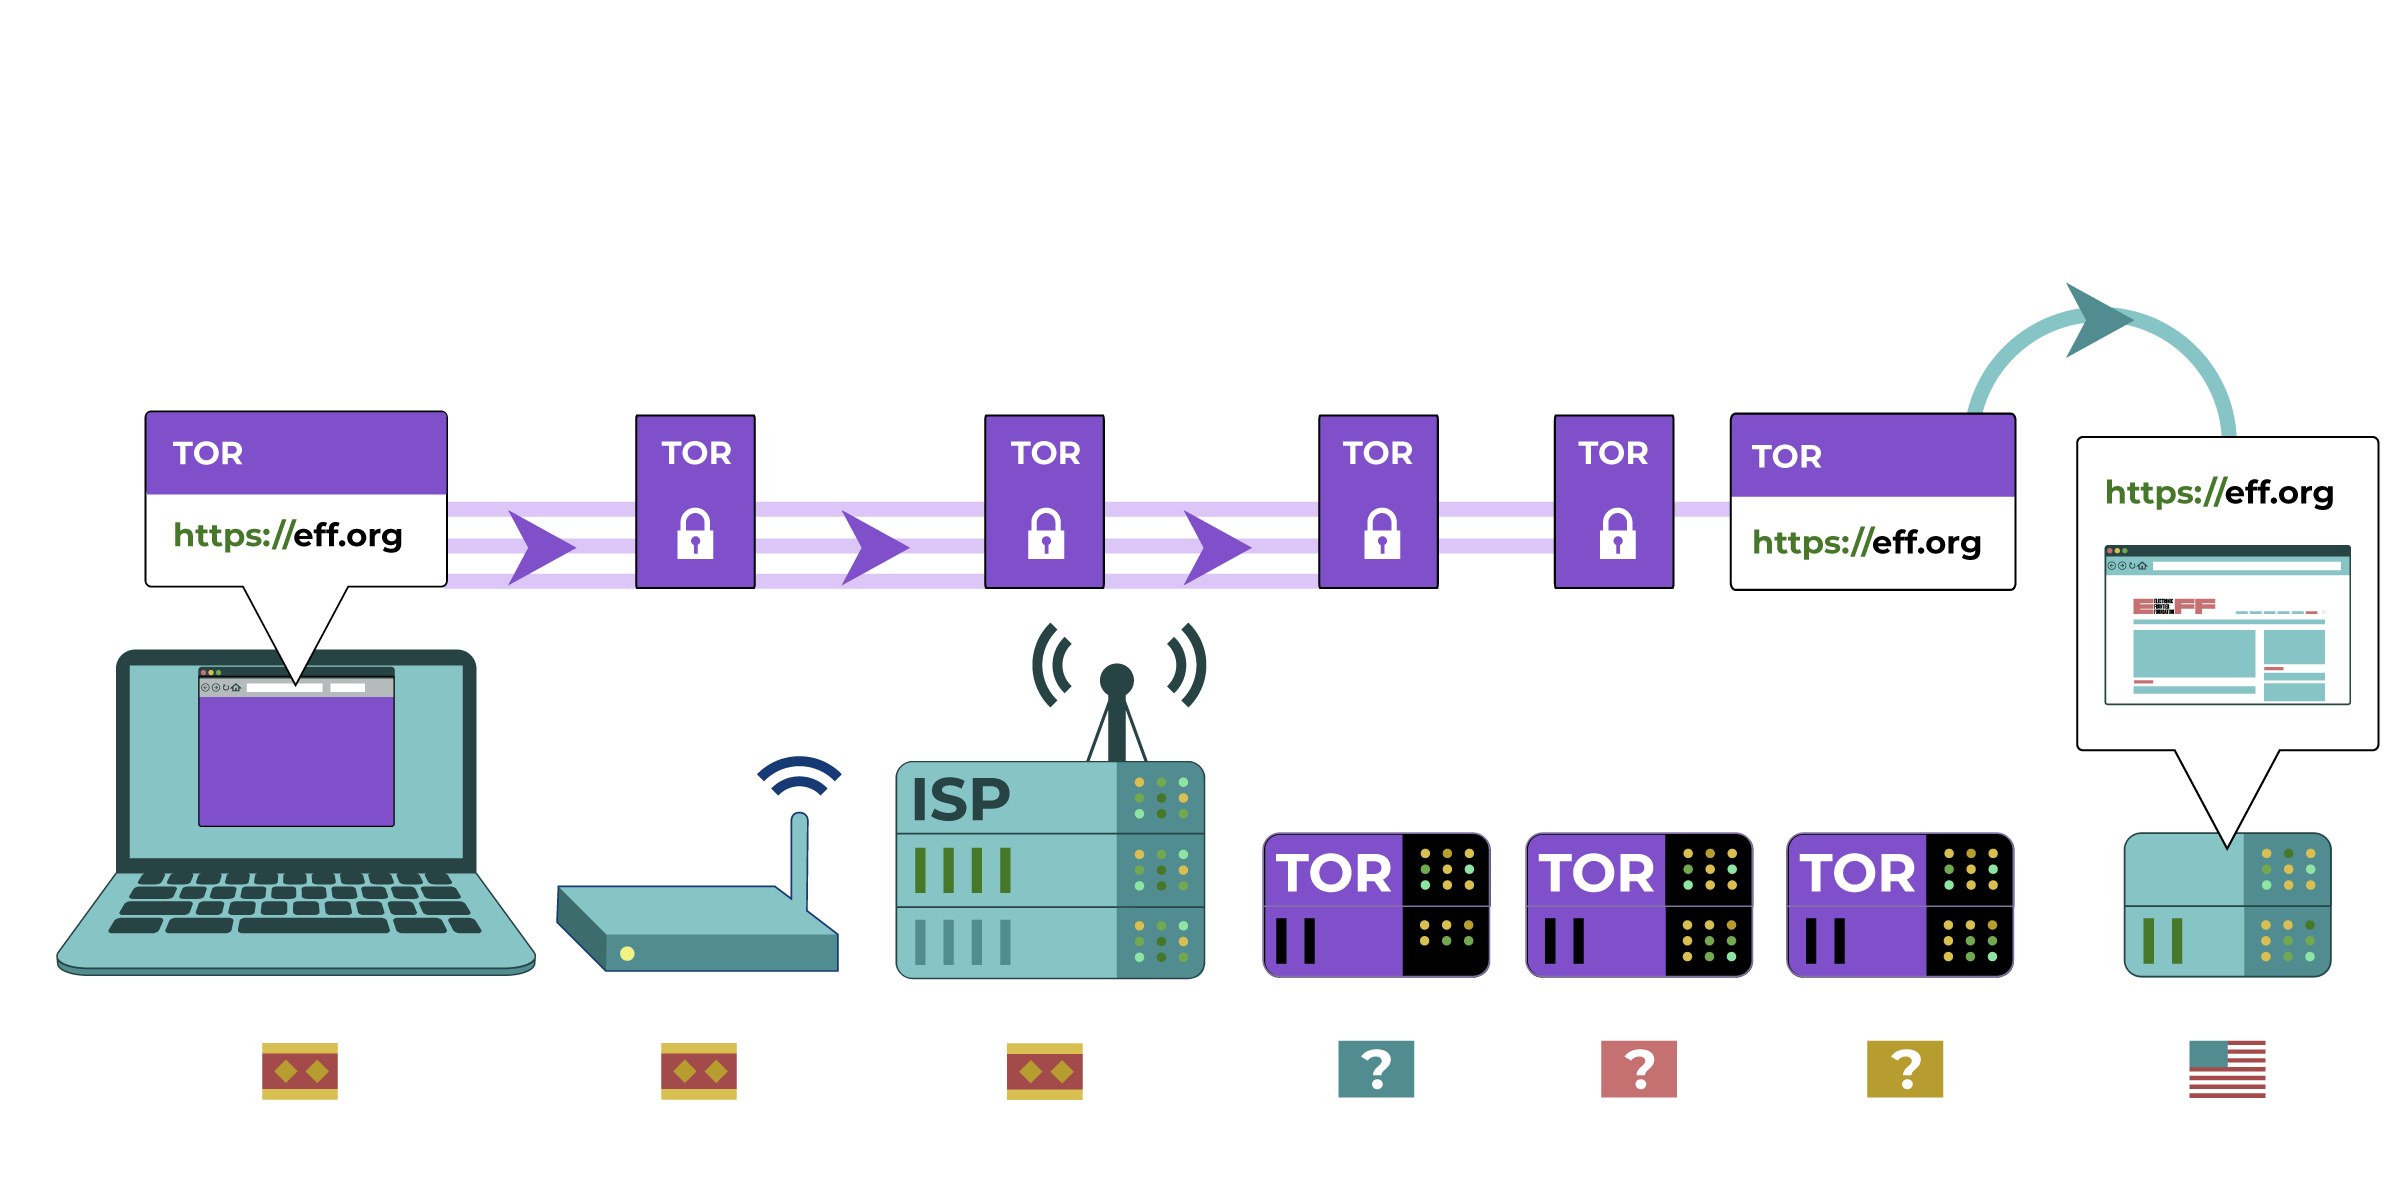 La computadora usa Tor para conectarse a eff.org. Tor enruta la conexión a través de varios 